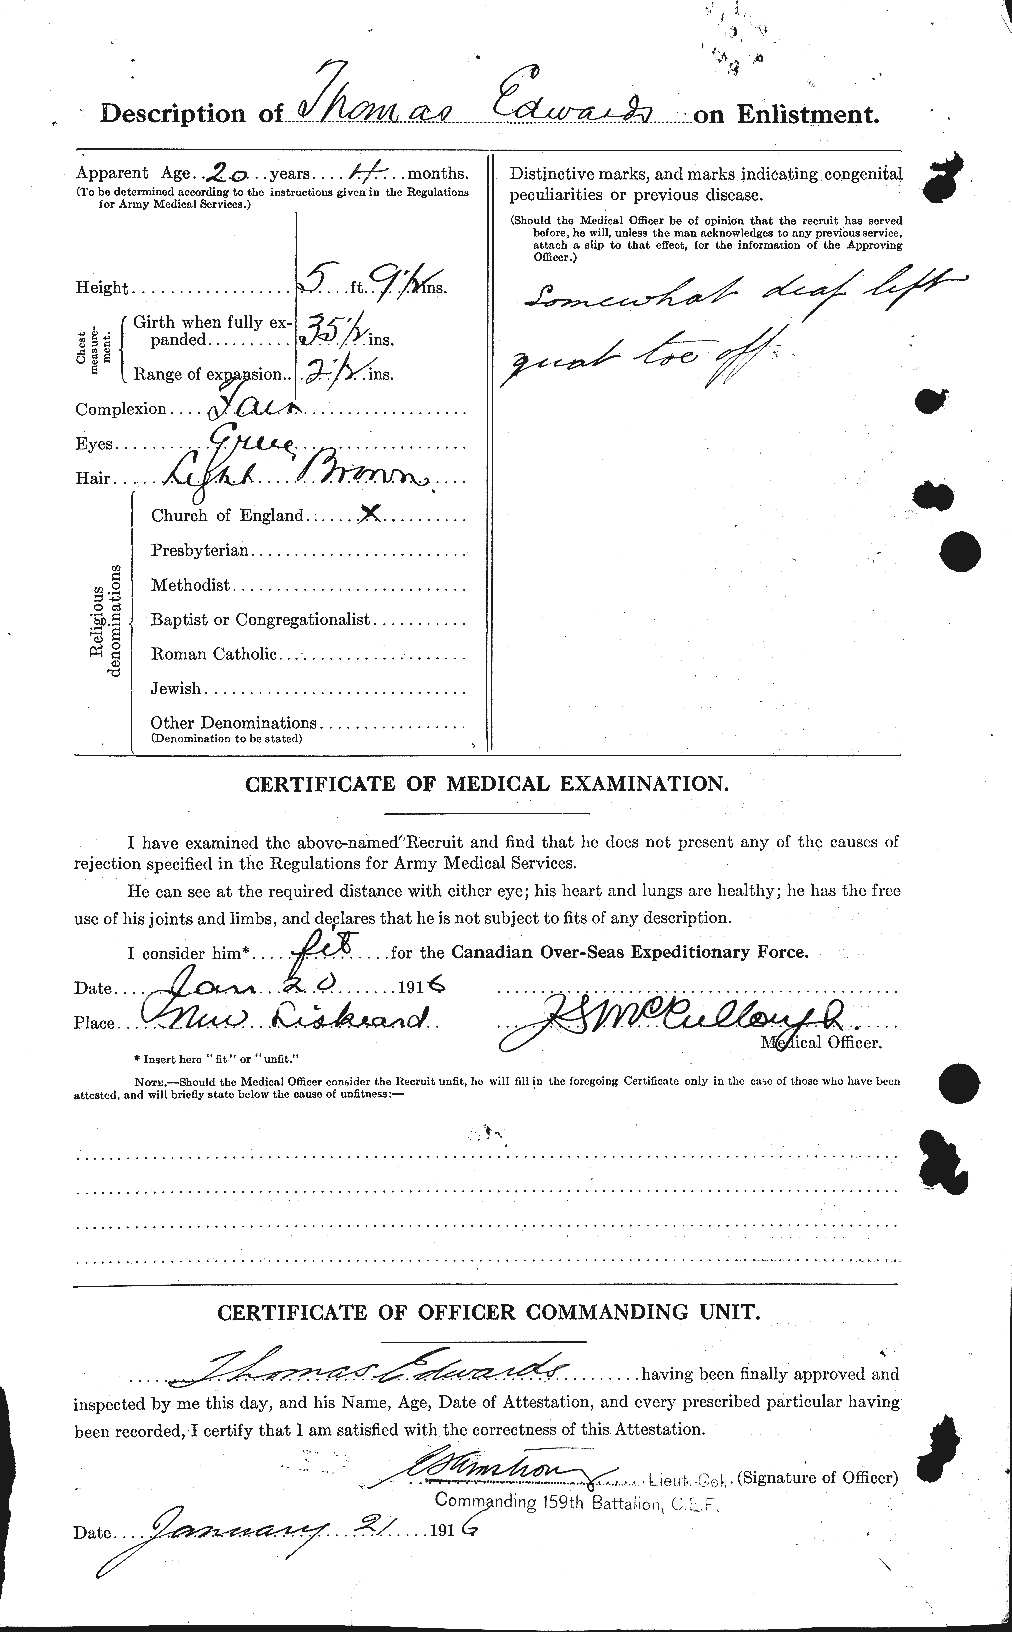 Dossiers du Personnel de la Première Guerre mondiale - CEC 310333b